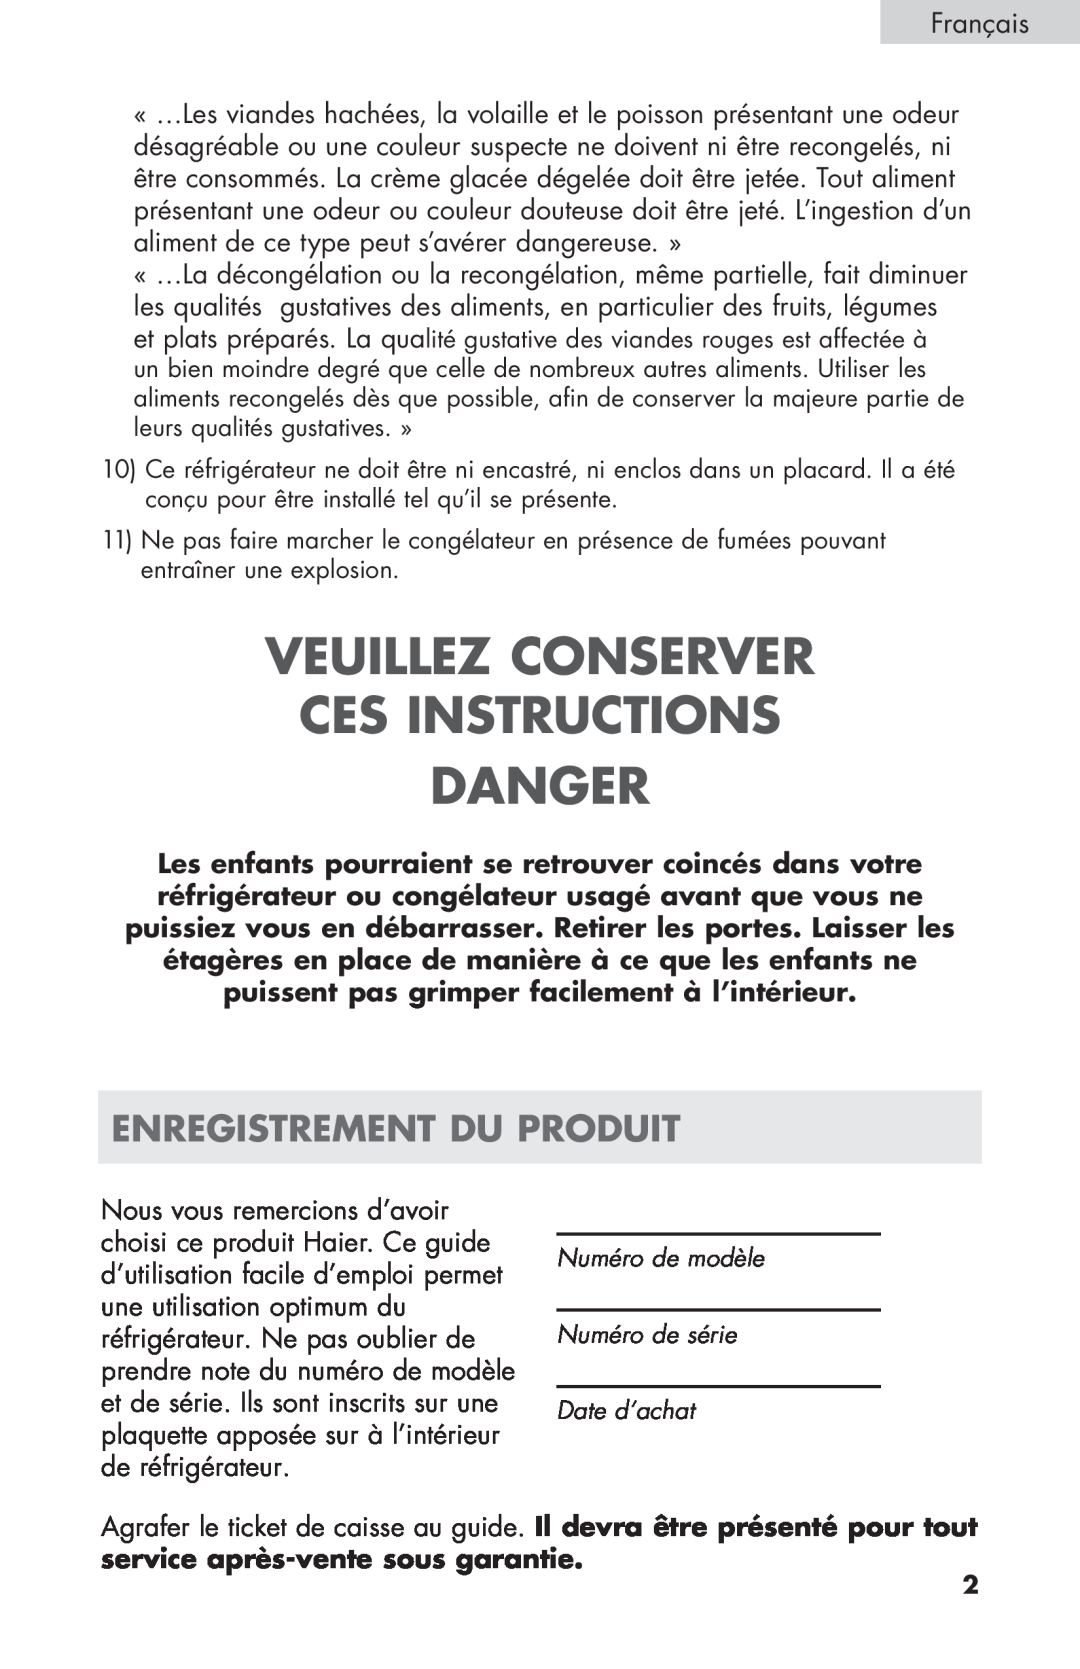 Haier ECR27B warranty Veuillez Conserver Ces Instructions Danger, Enregistrement Du Produit 